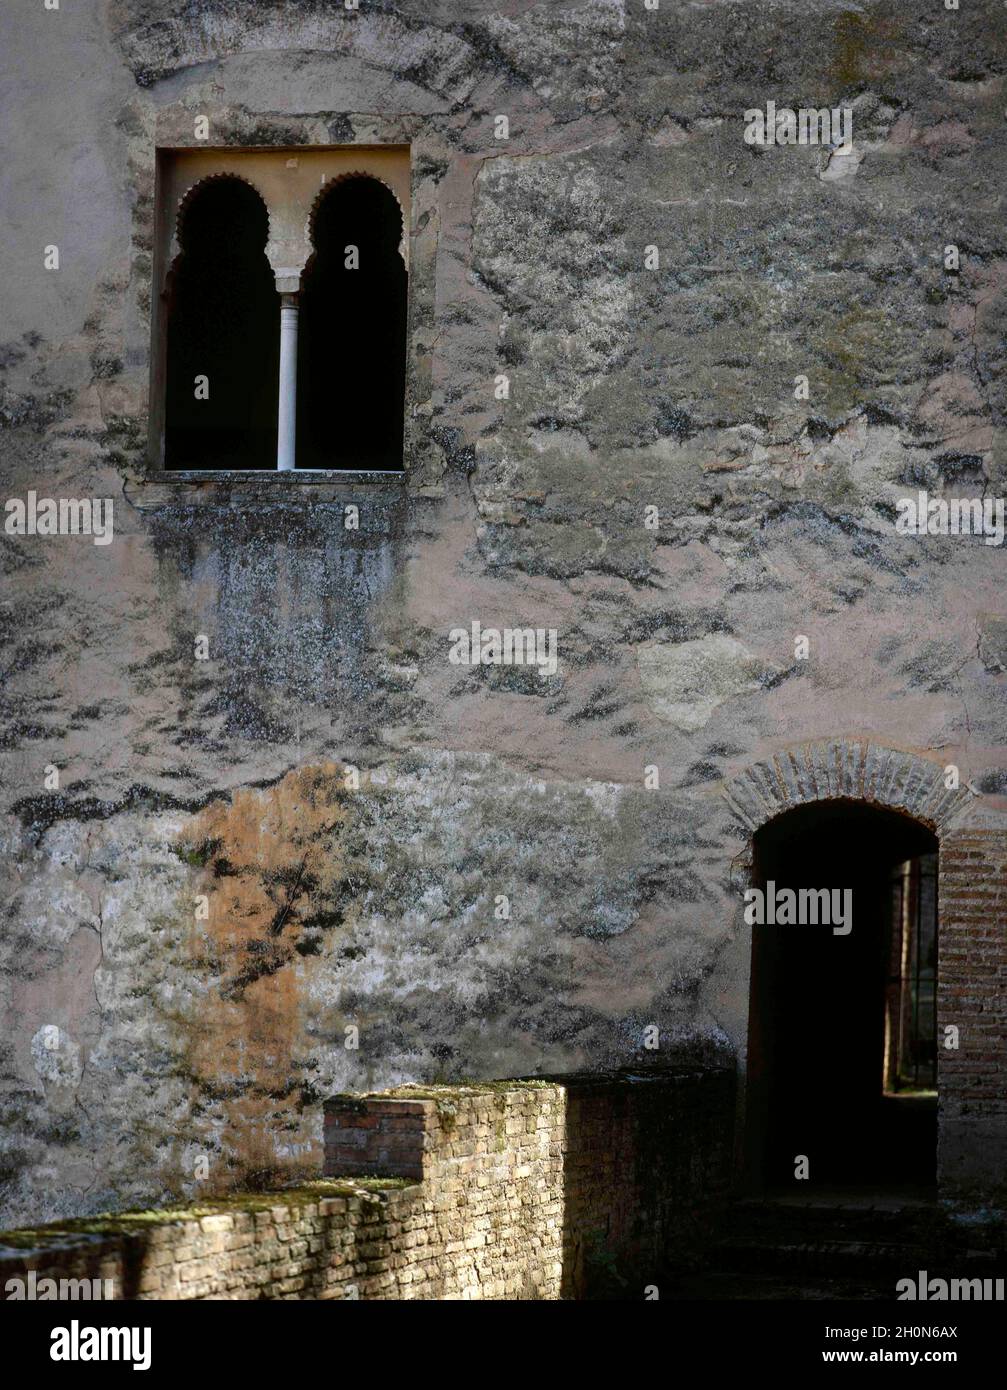 Spanien, Andalusien, Granada. Die Alhambra. Palast und Festung im 13. Jahrhundert umgebaut. Emirat Granada. Nasriden-Dynastie. Turm der Prinzessinnen Stockfoto